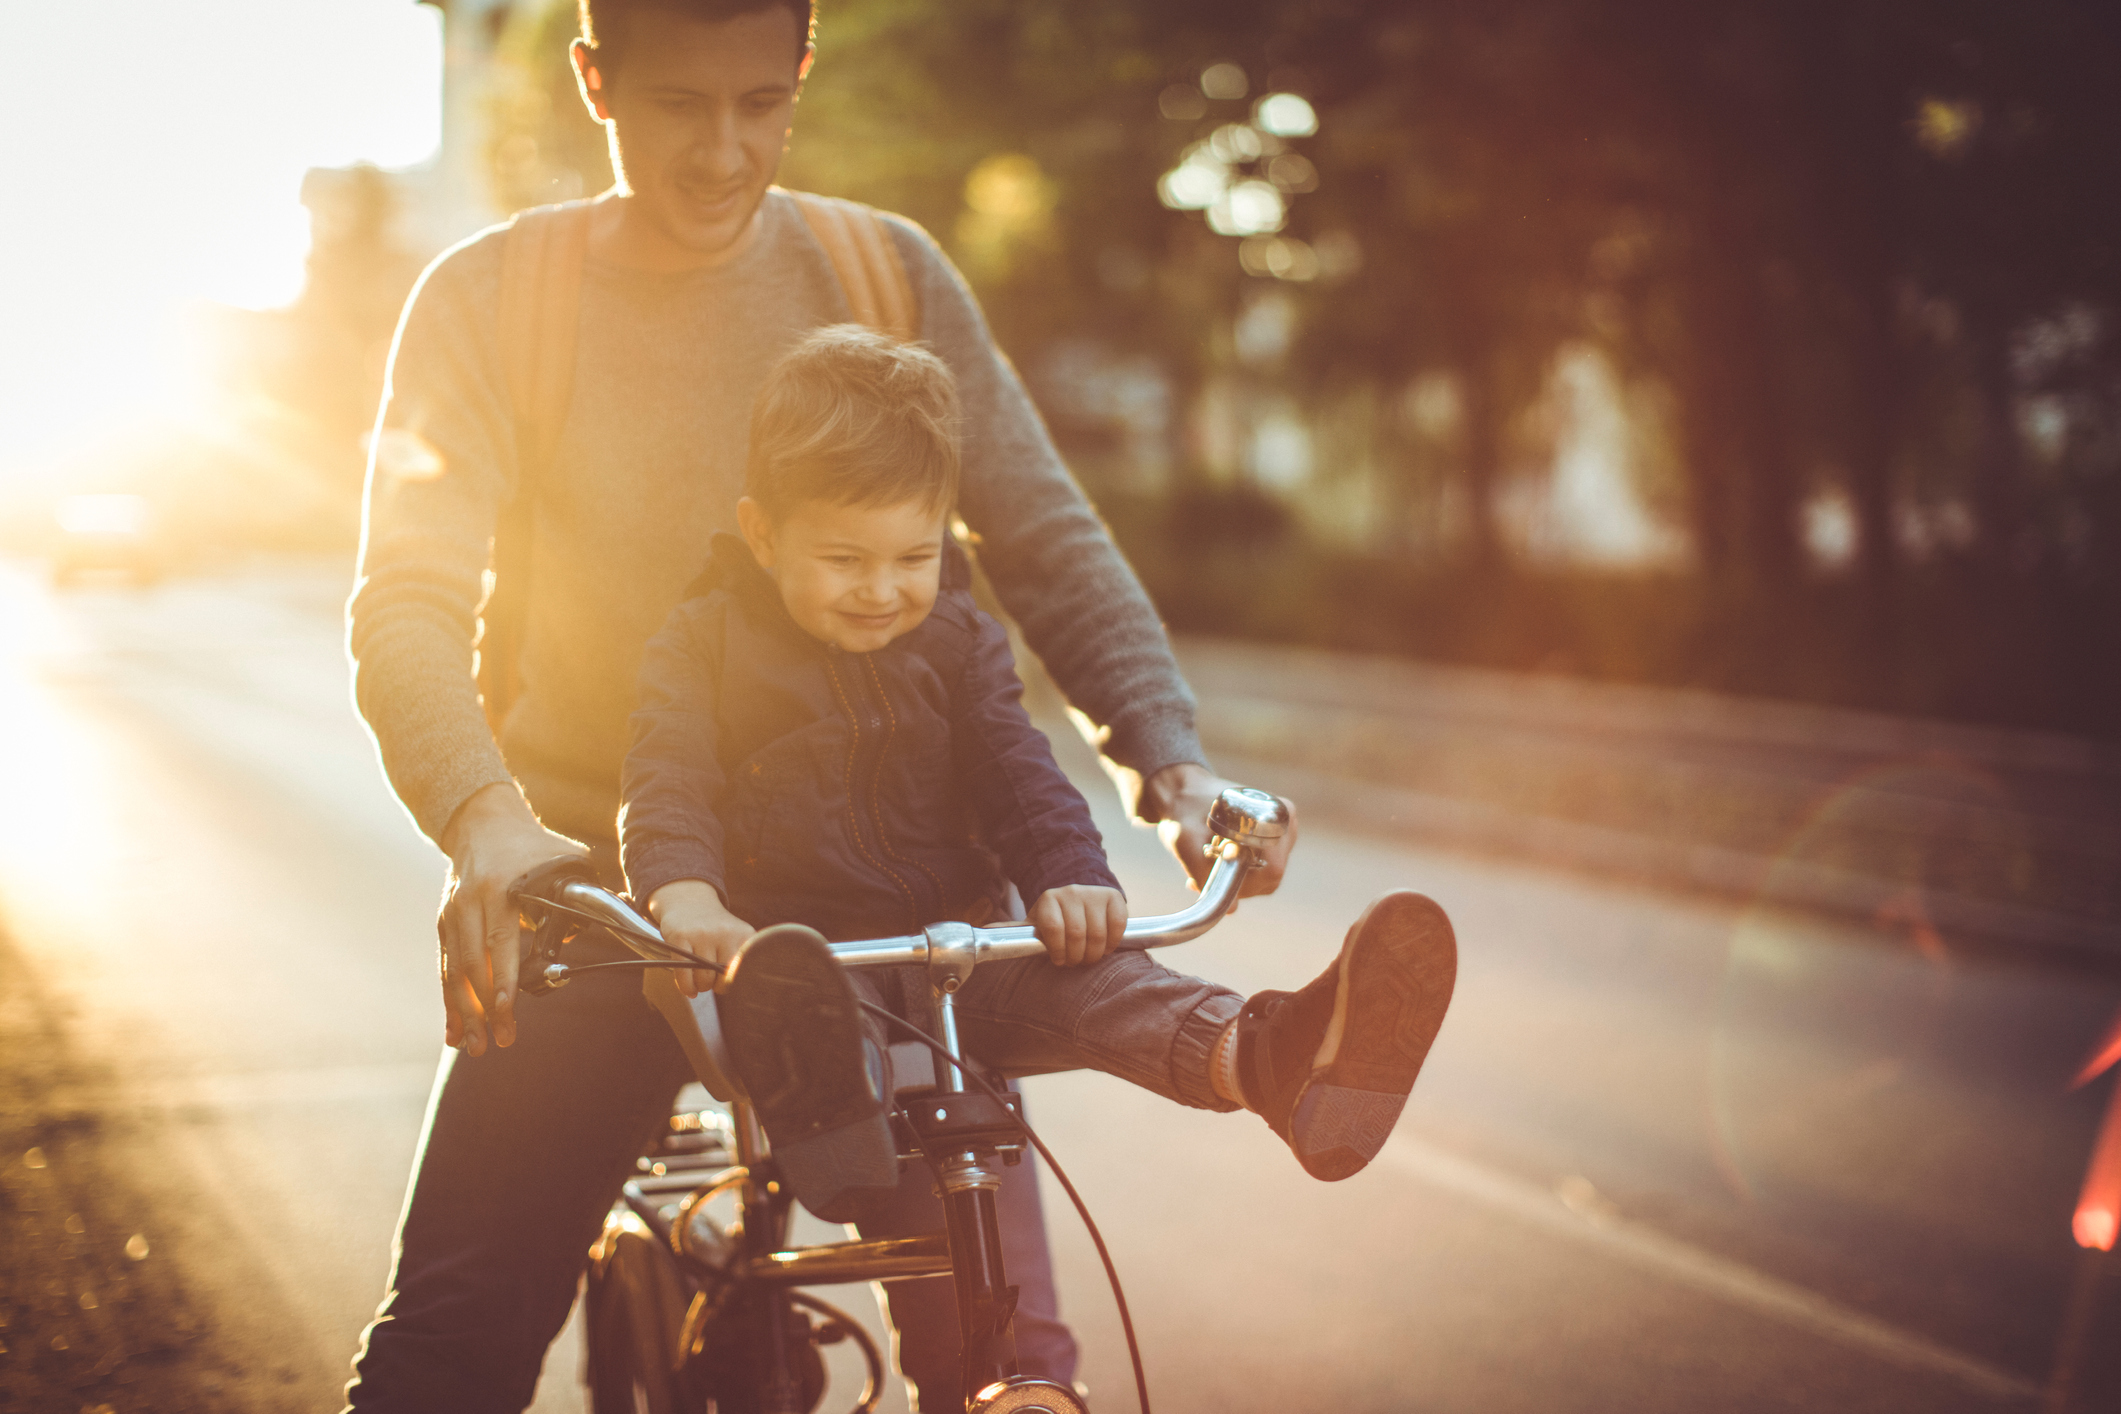 Junger Mann fährt mit kleinem Jungen auf der Stange Fahrrad.